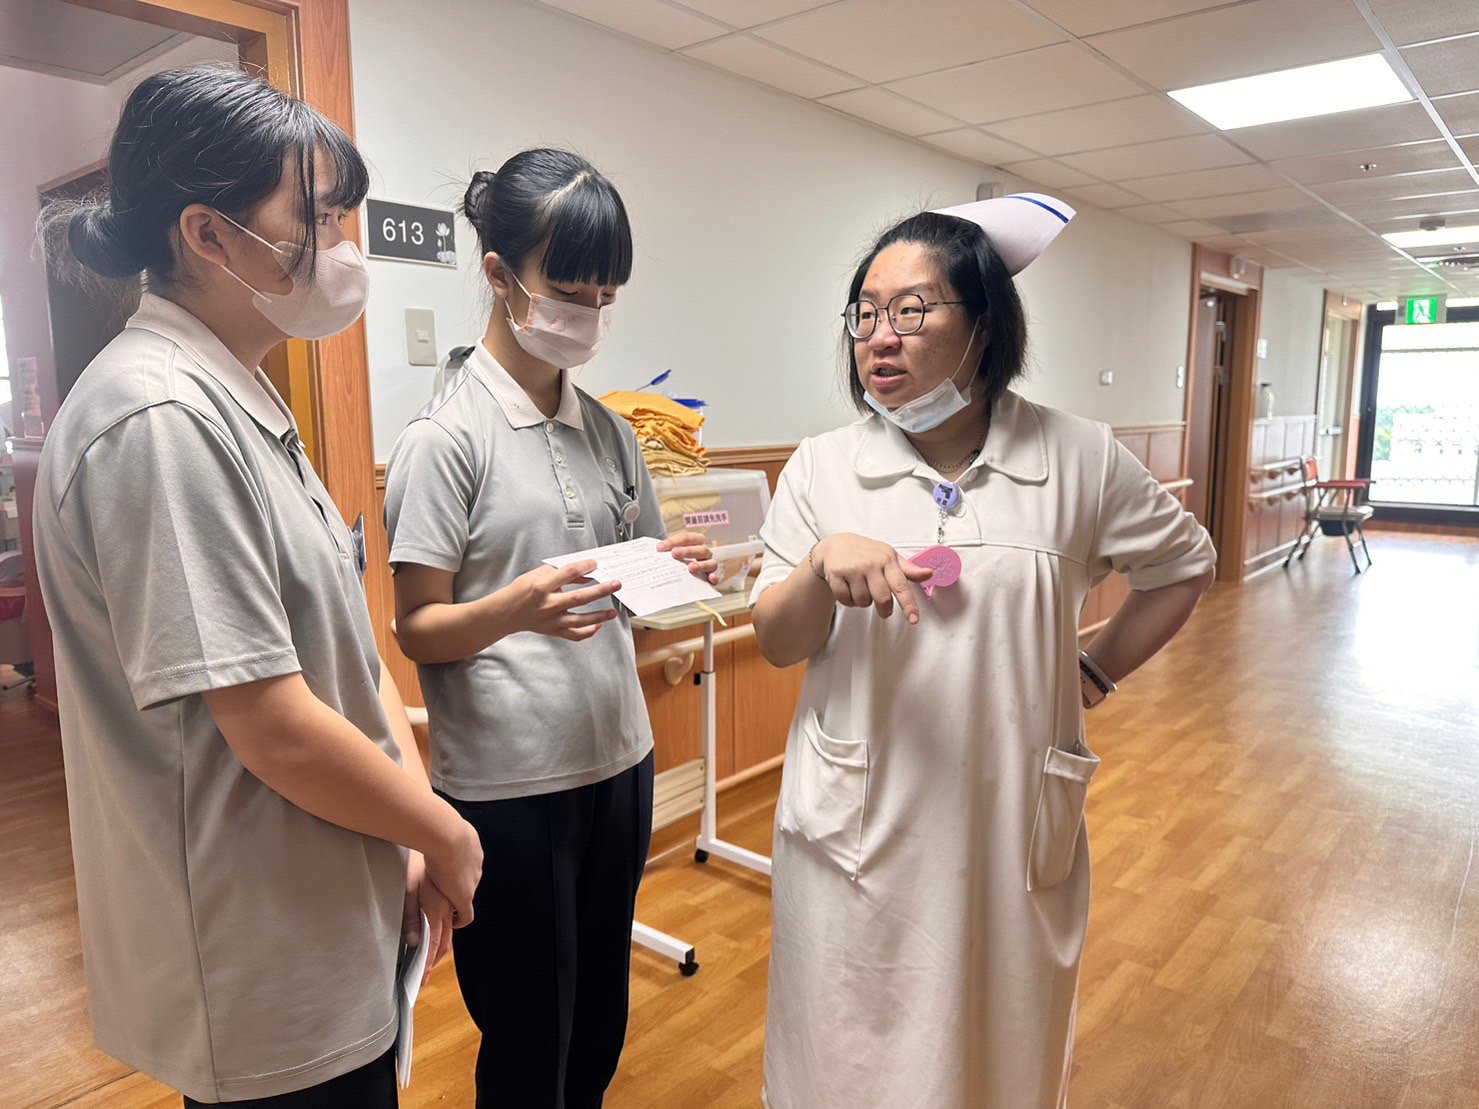 剛升任副護理長的范君嘉細心帶領學妹認識病房環境。